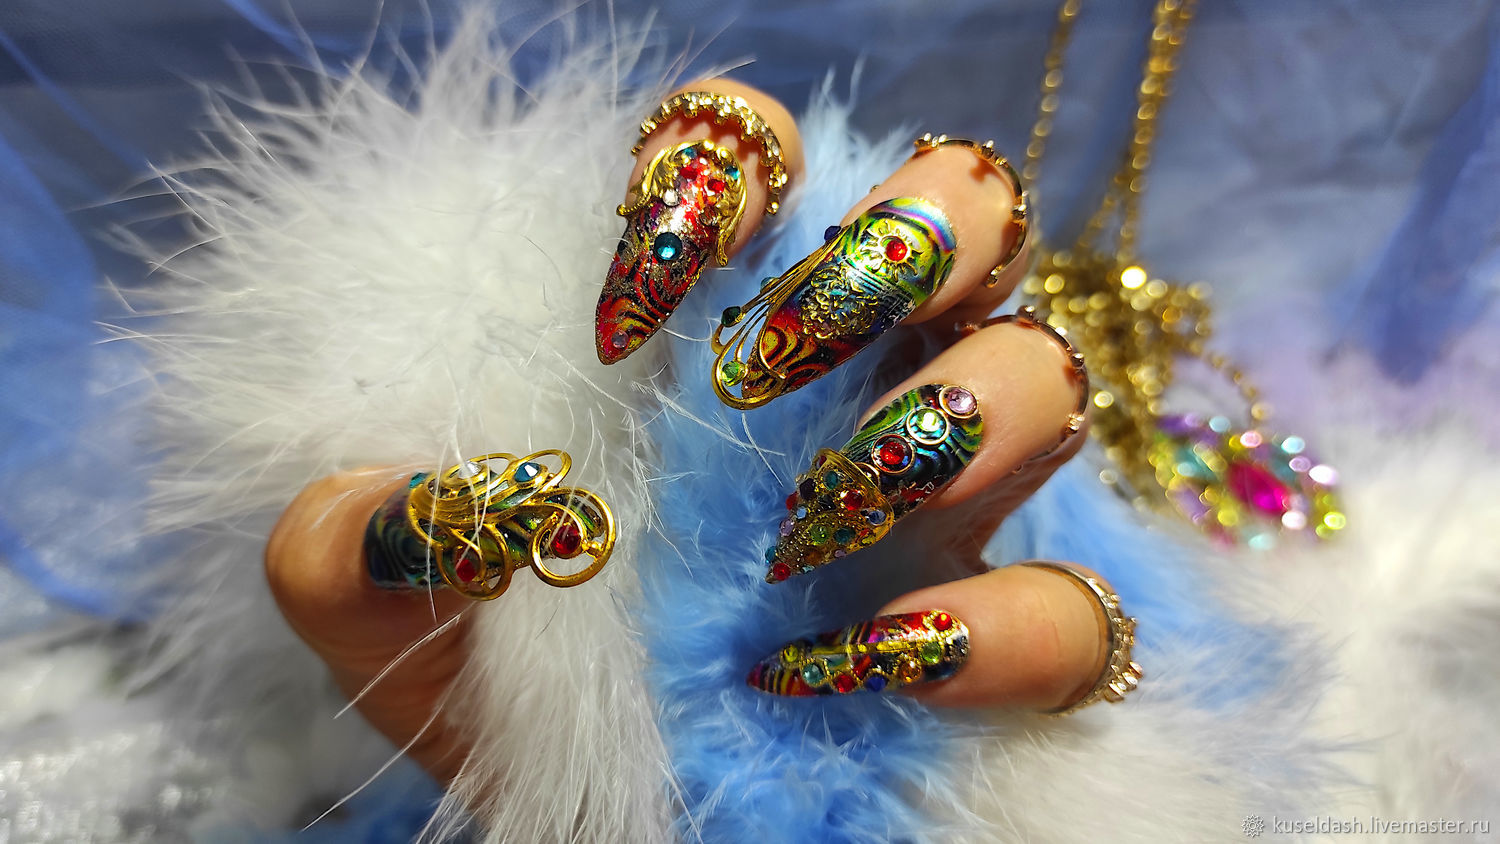 Дизайн ногтей — цена в Москве, записаться в салон онлайн